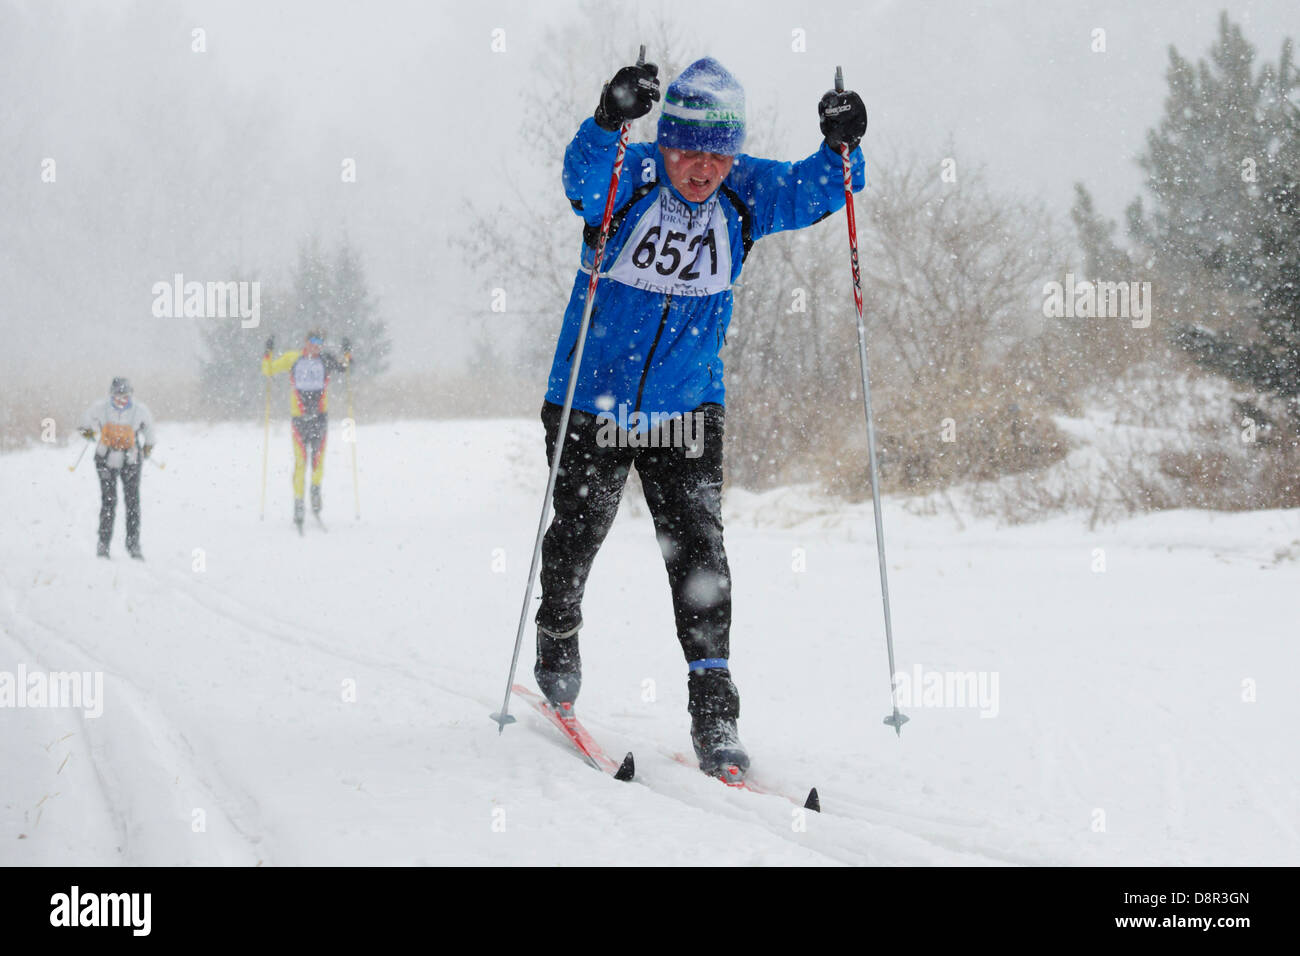 La nieve cae pesado como competidores de esquí Vasaloppet Mora en la categoría clásica de 42 km el 10 de febrero de 2013 cerca de Mora, Minnesota. Foto de stock